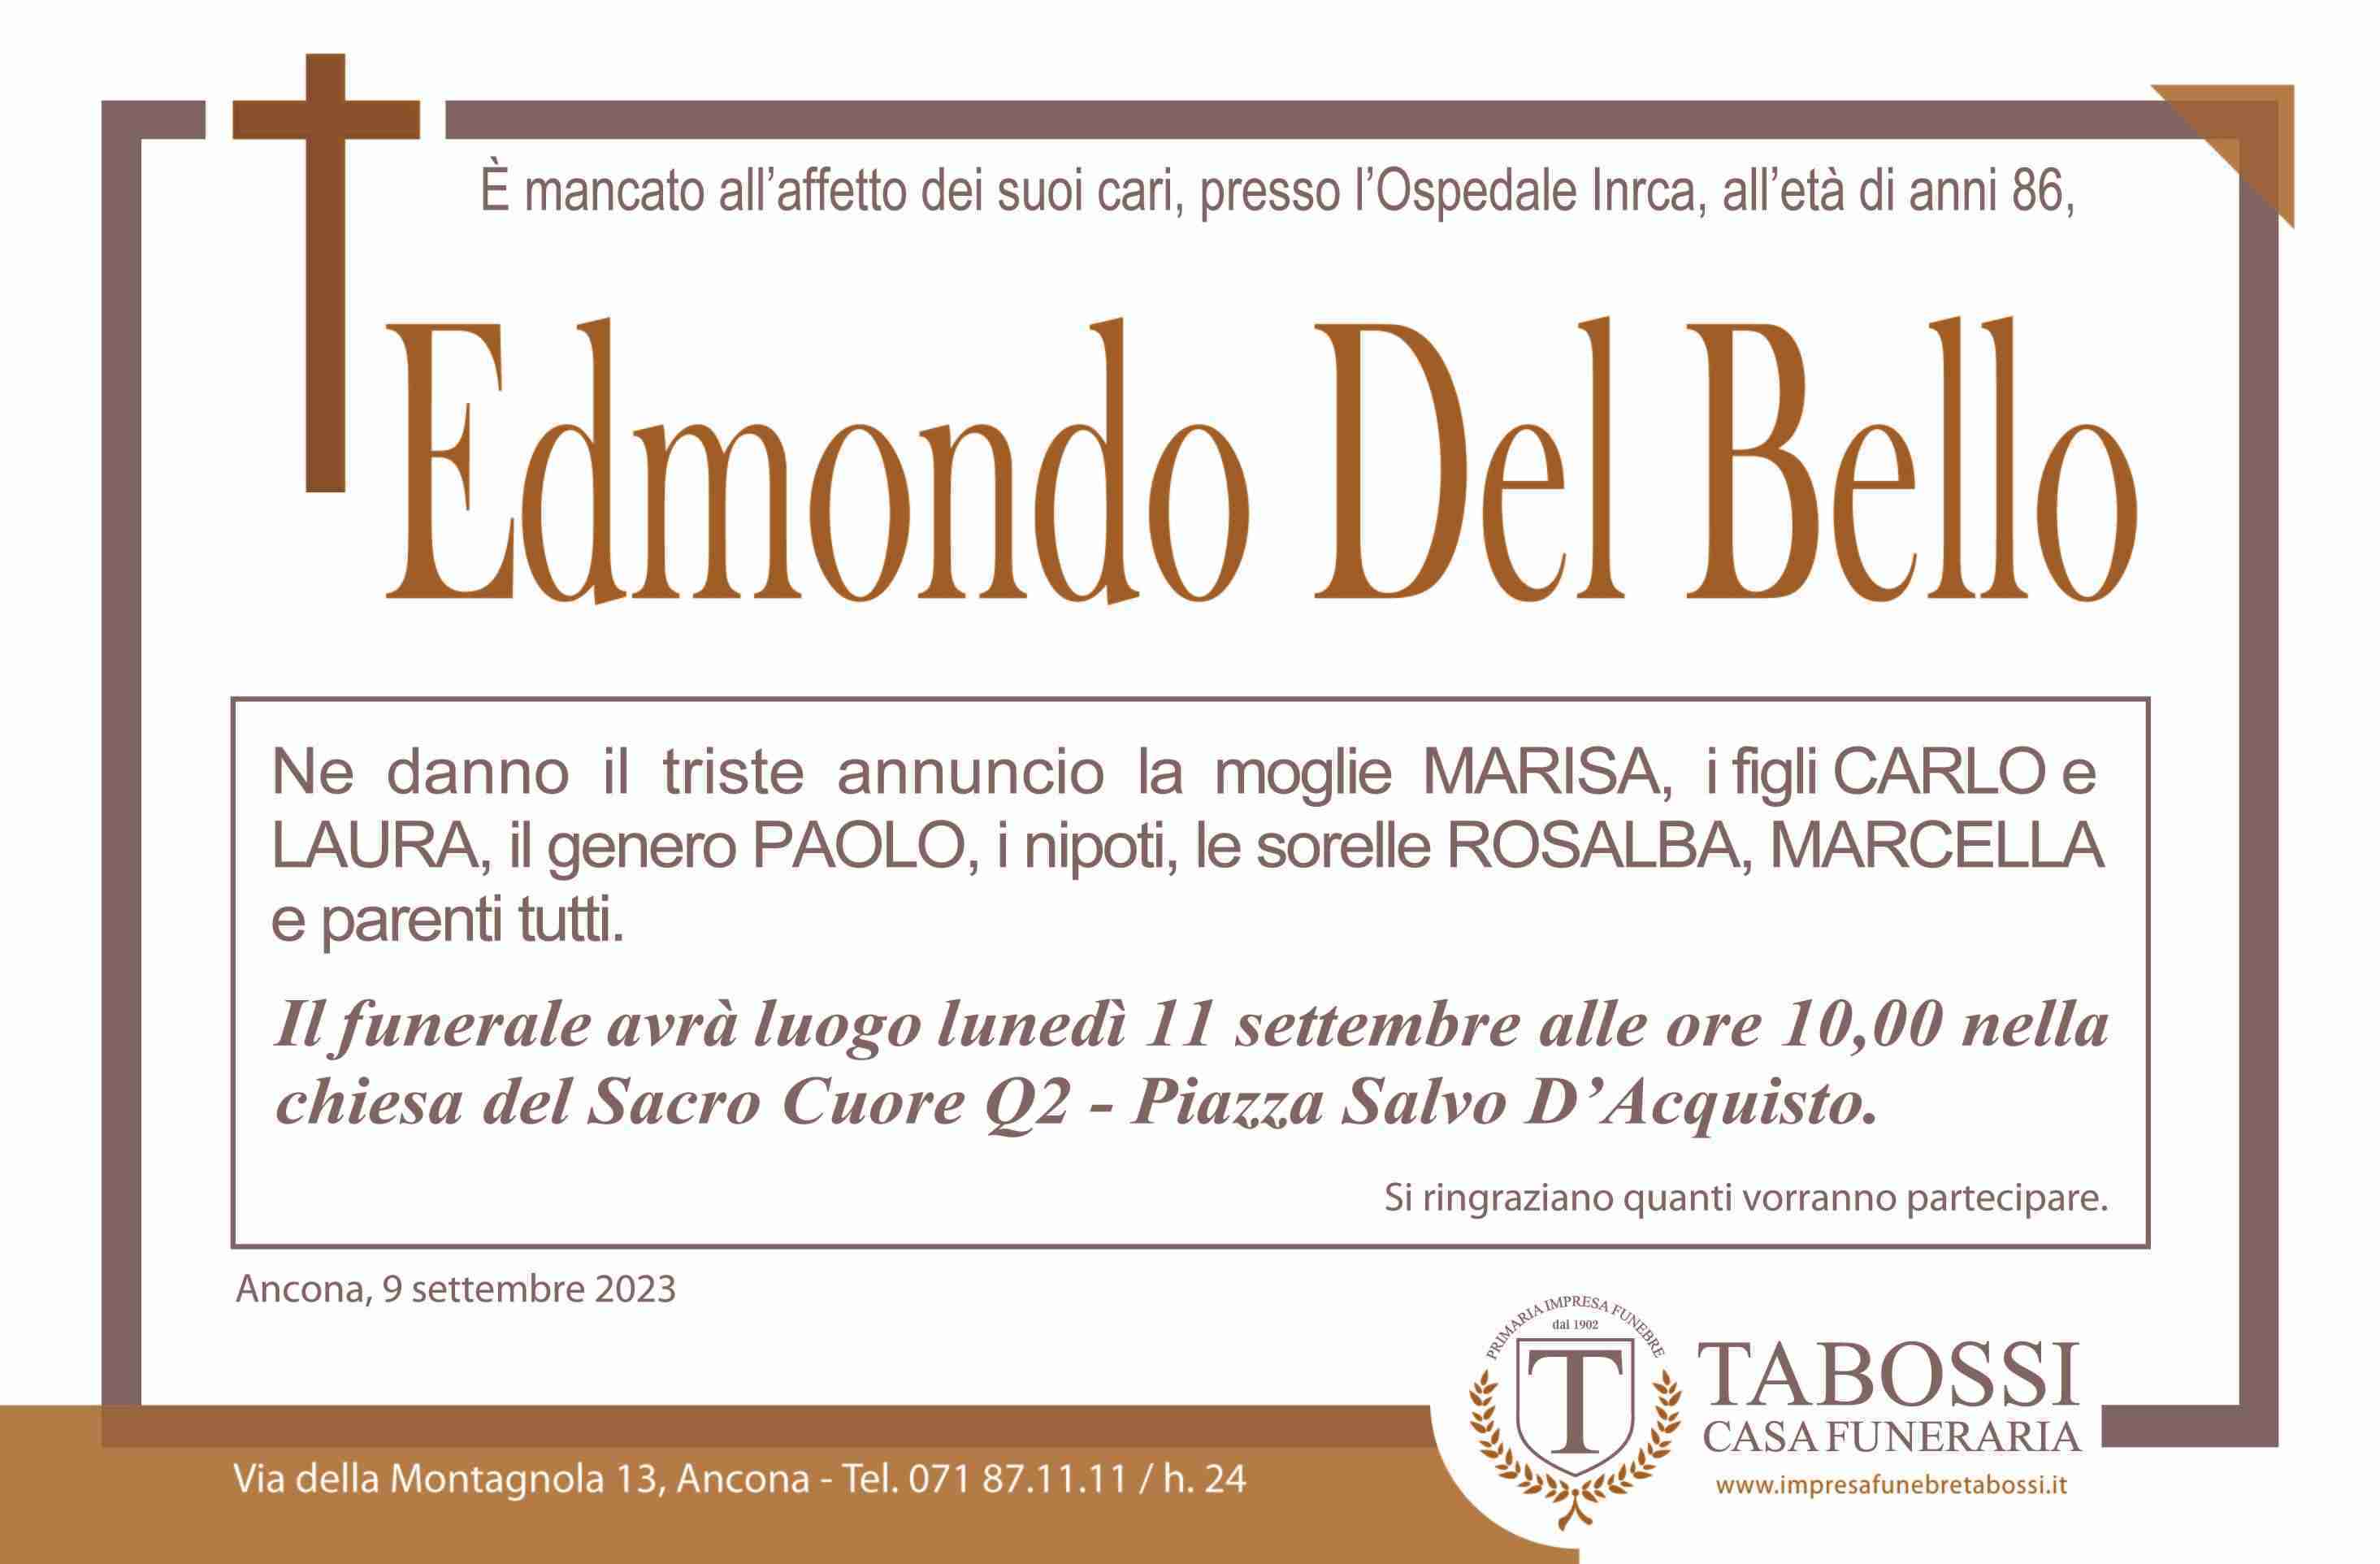 Edmondo Del Bello